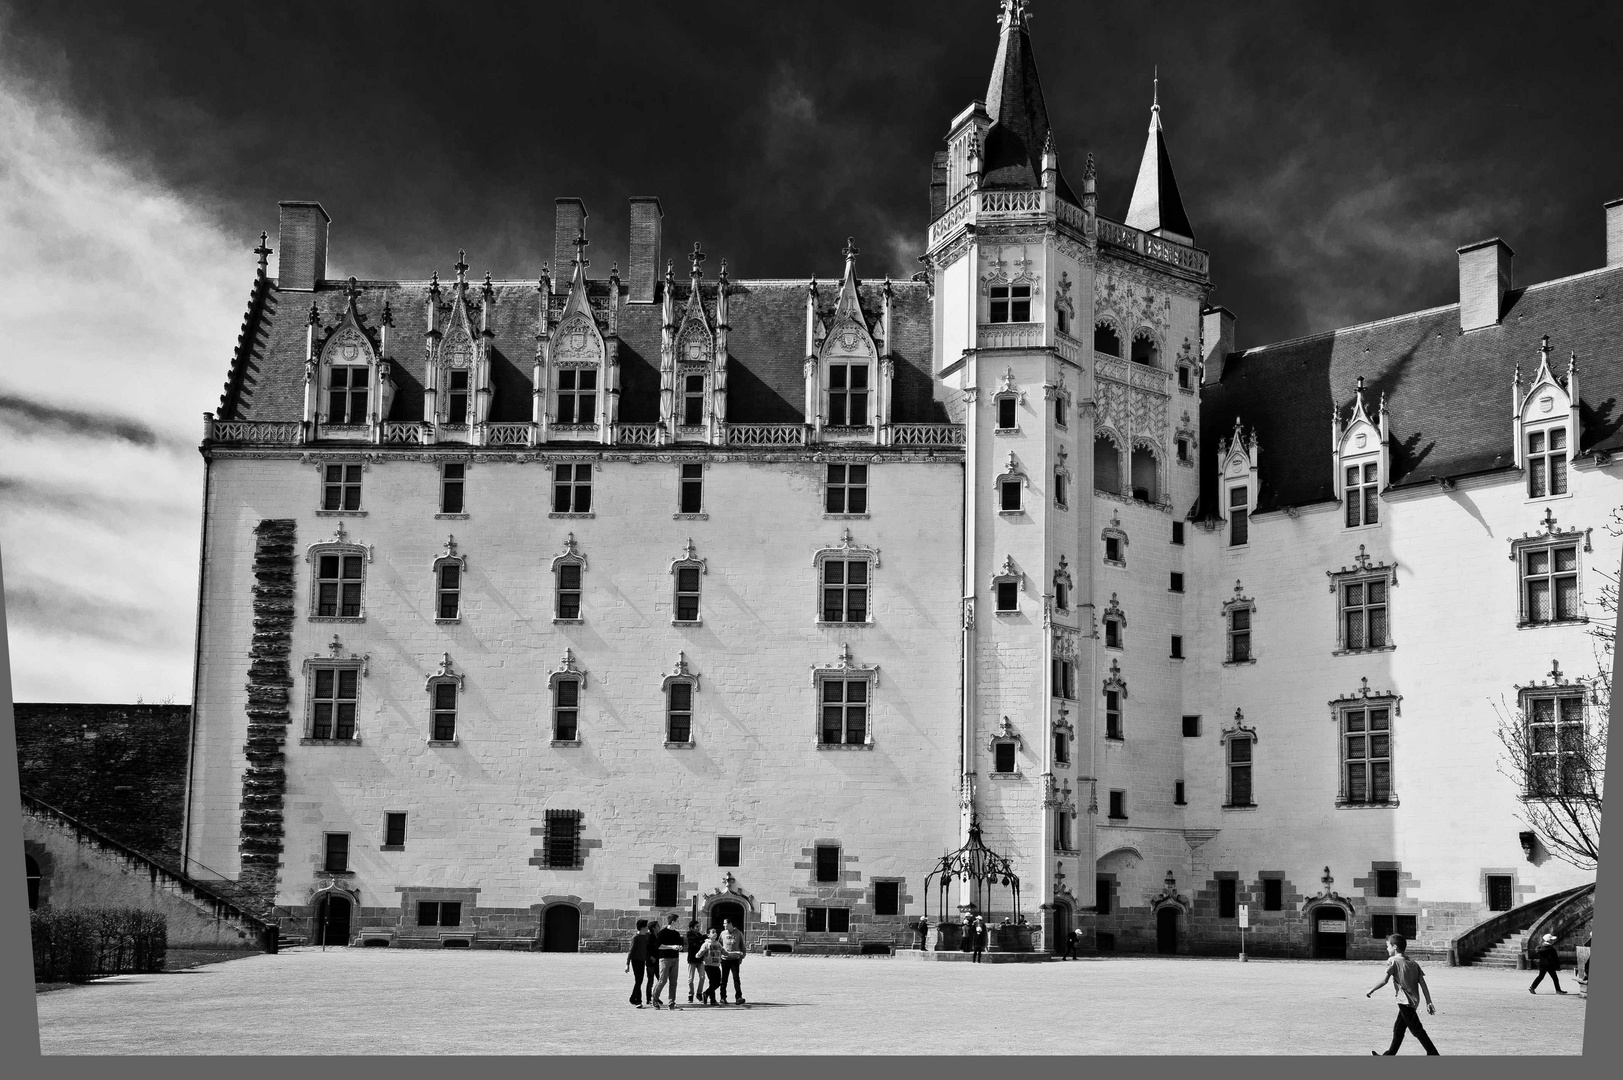 château Anne de Bretagne